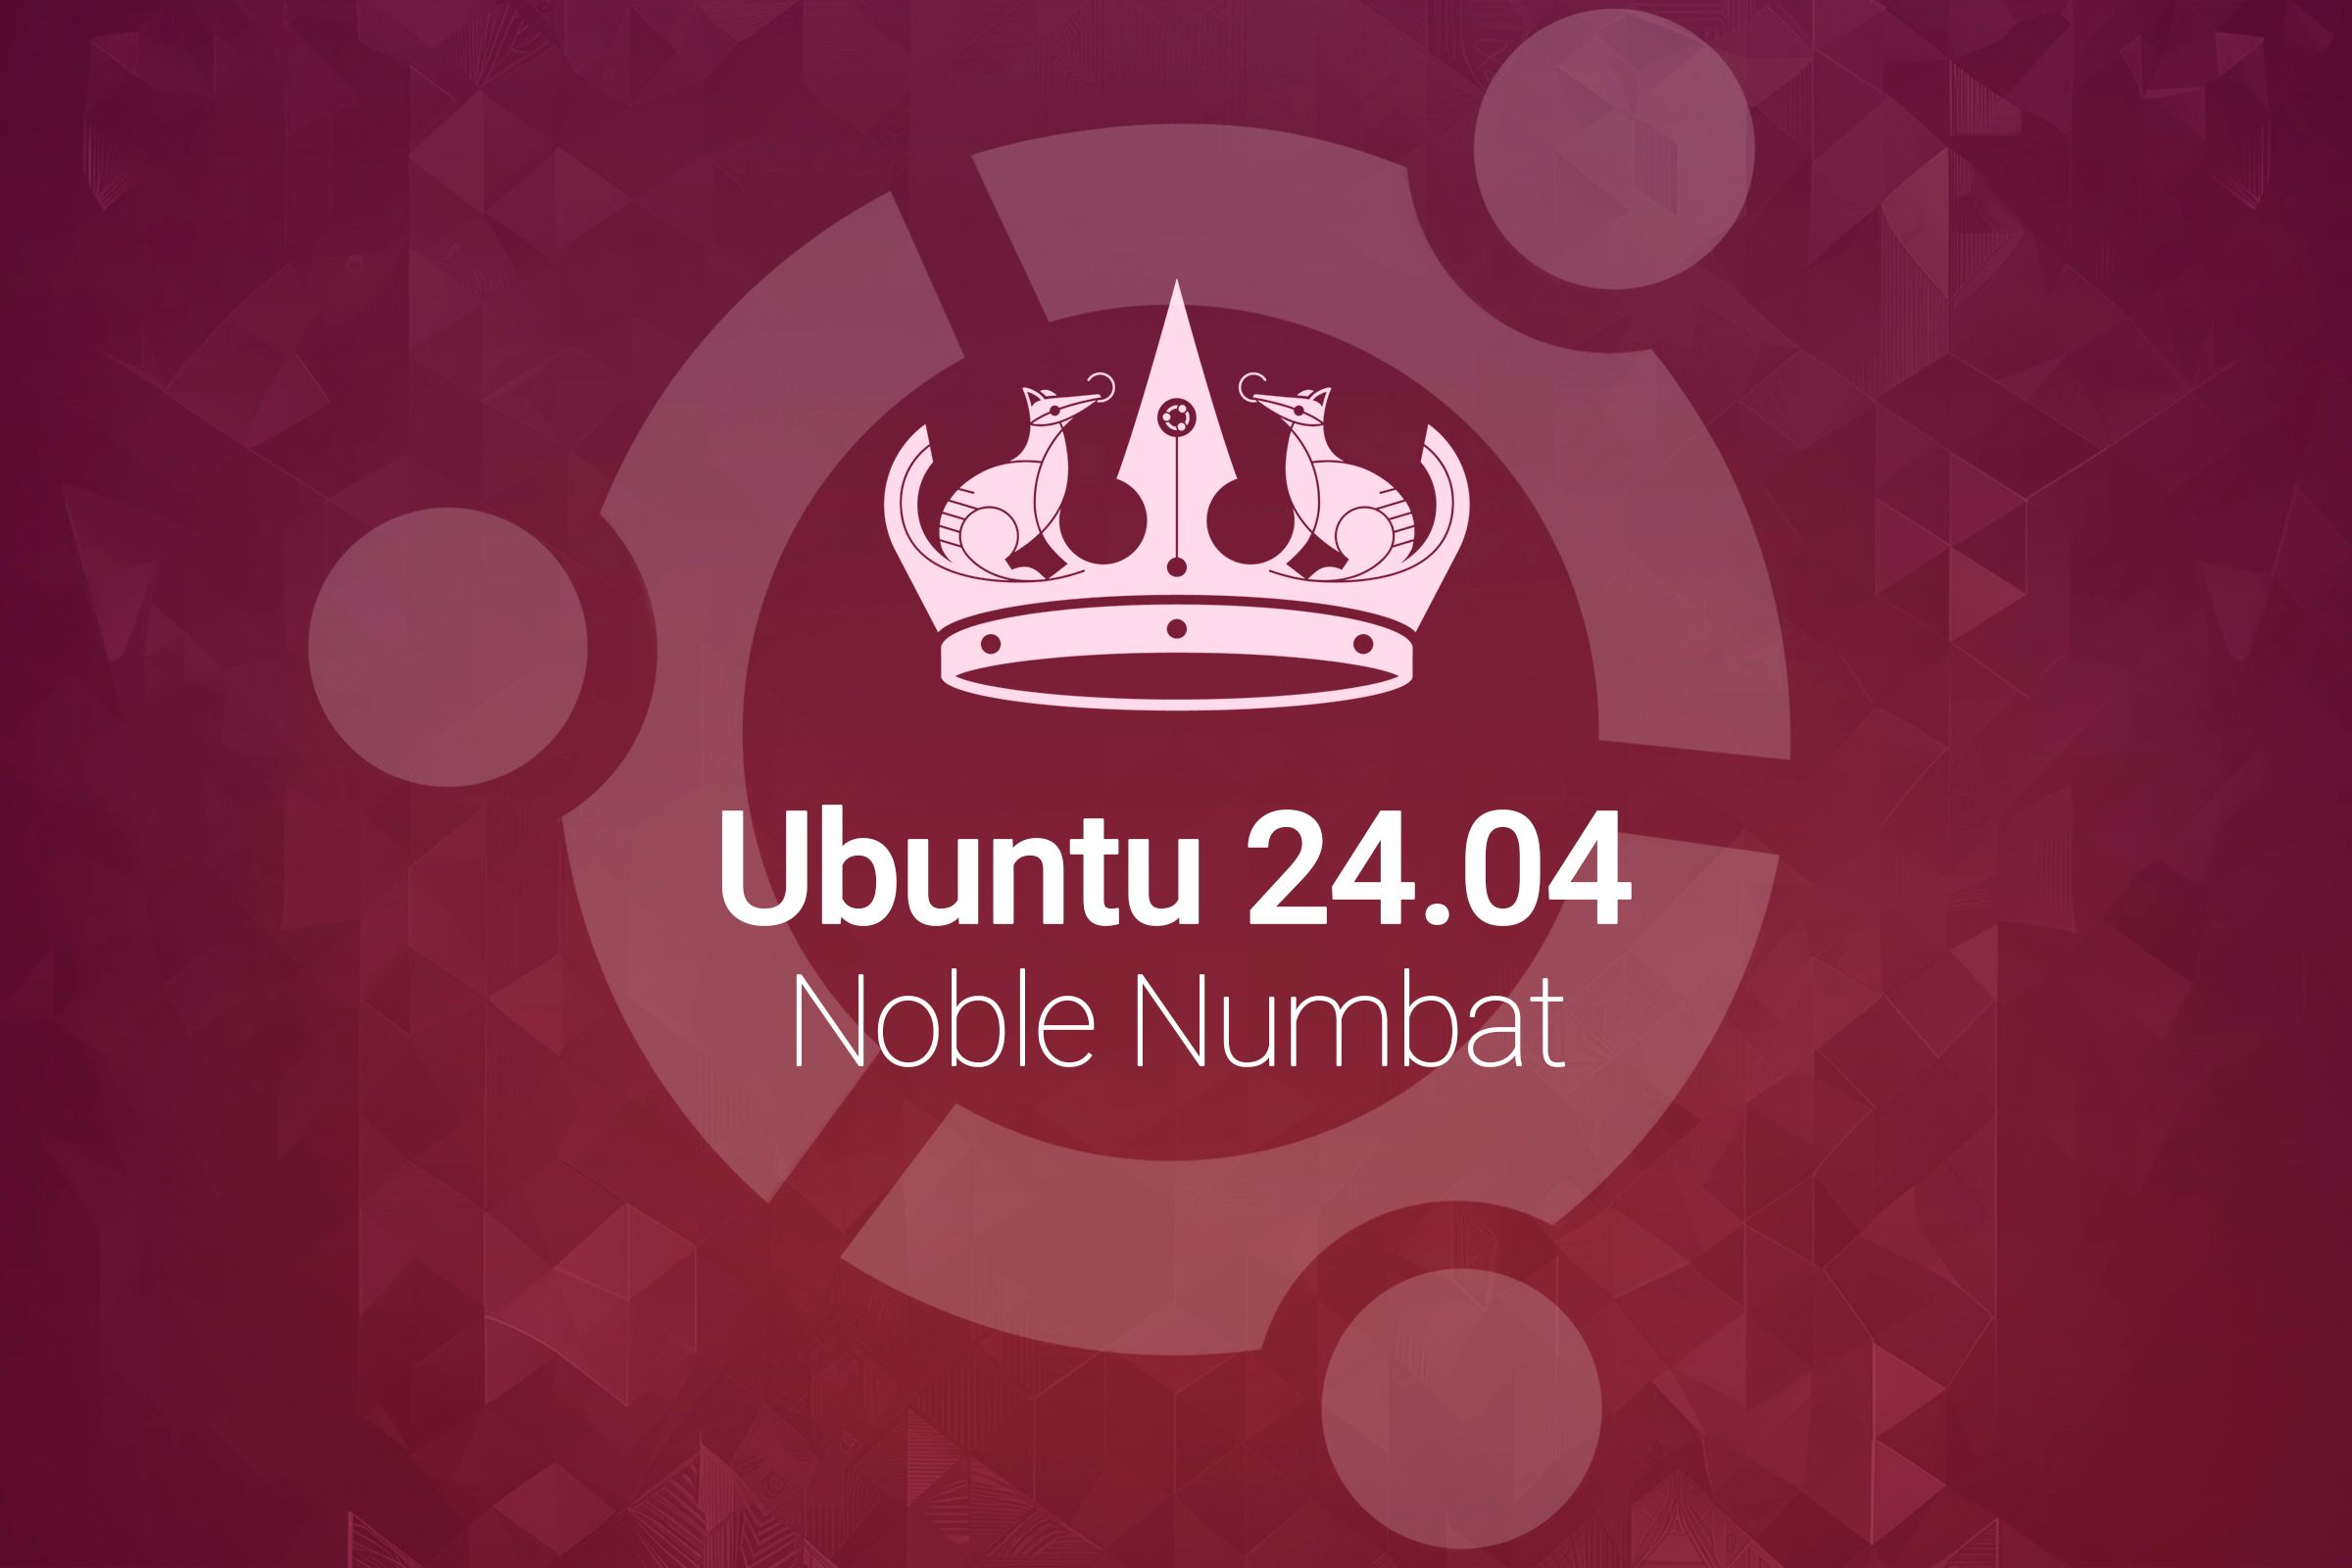 What's New in Ubuntu 24.04 "Noble Numbat"